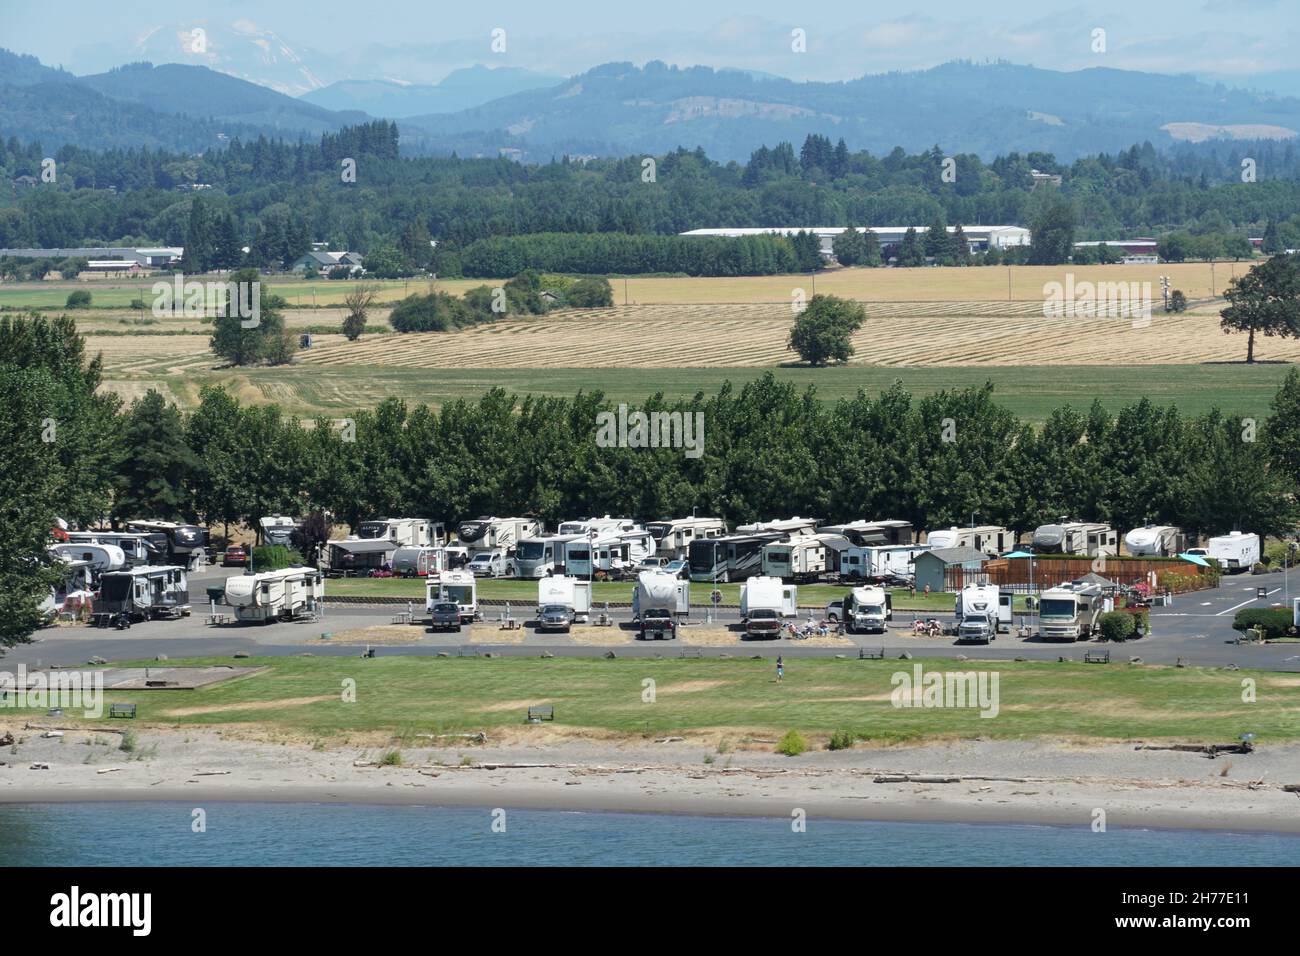 Paisaje y costa con carros de caravana y camioneta aparcada en la orilla del río Columbia en el camino de Portland, Oregon. Foto de stock